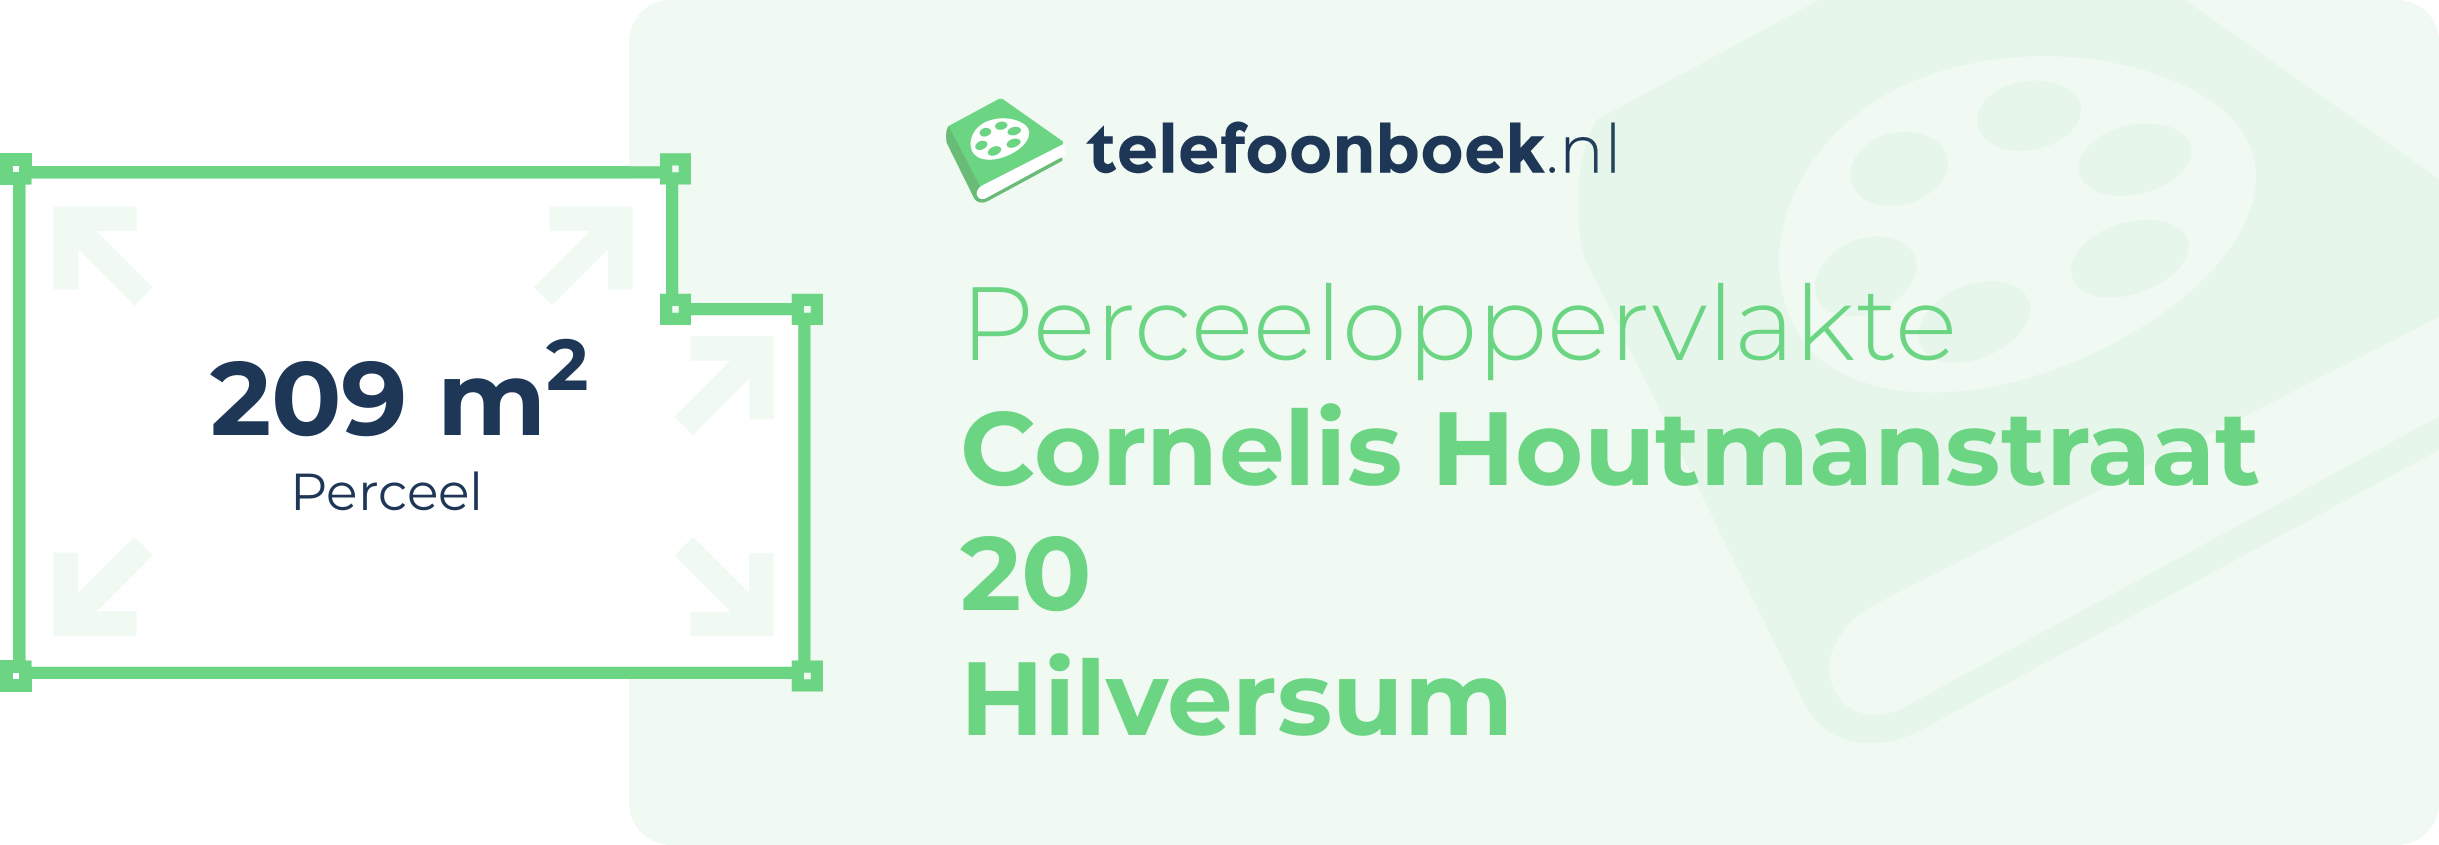 Perceeloppervlakte Cornelis Houtmanstraat 20 Hilversum